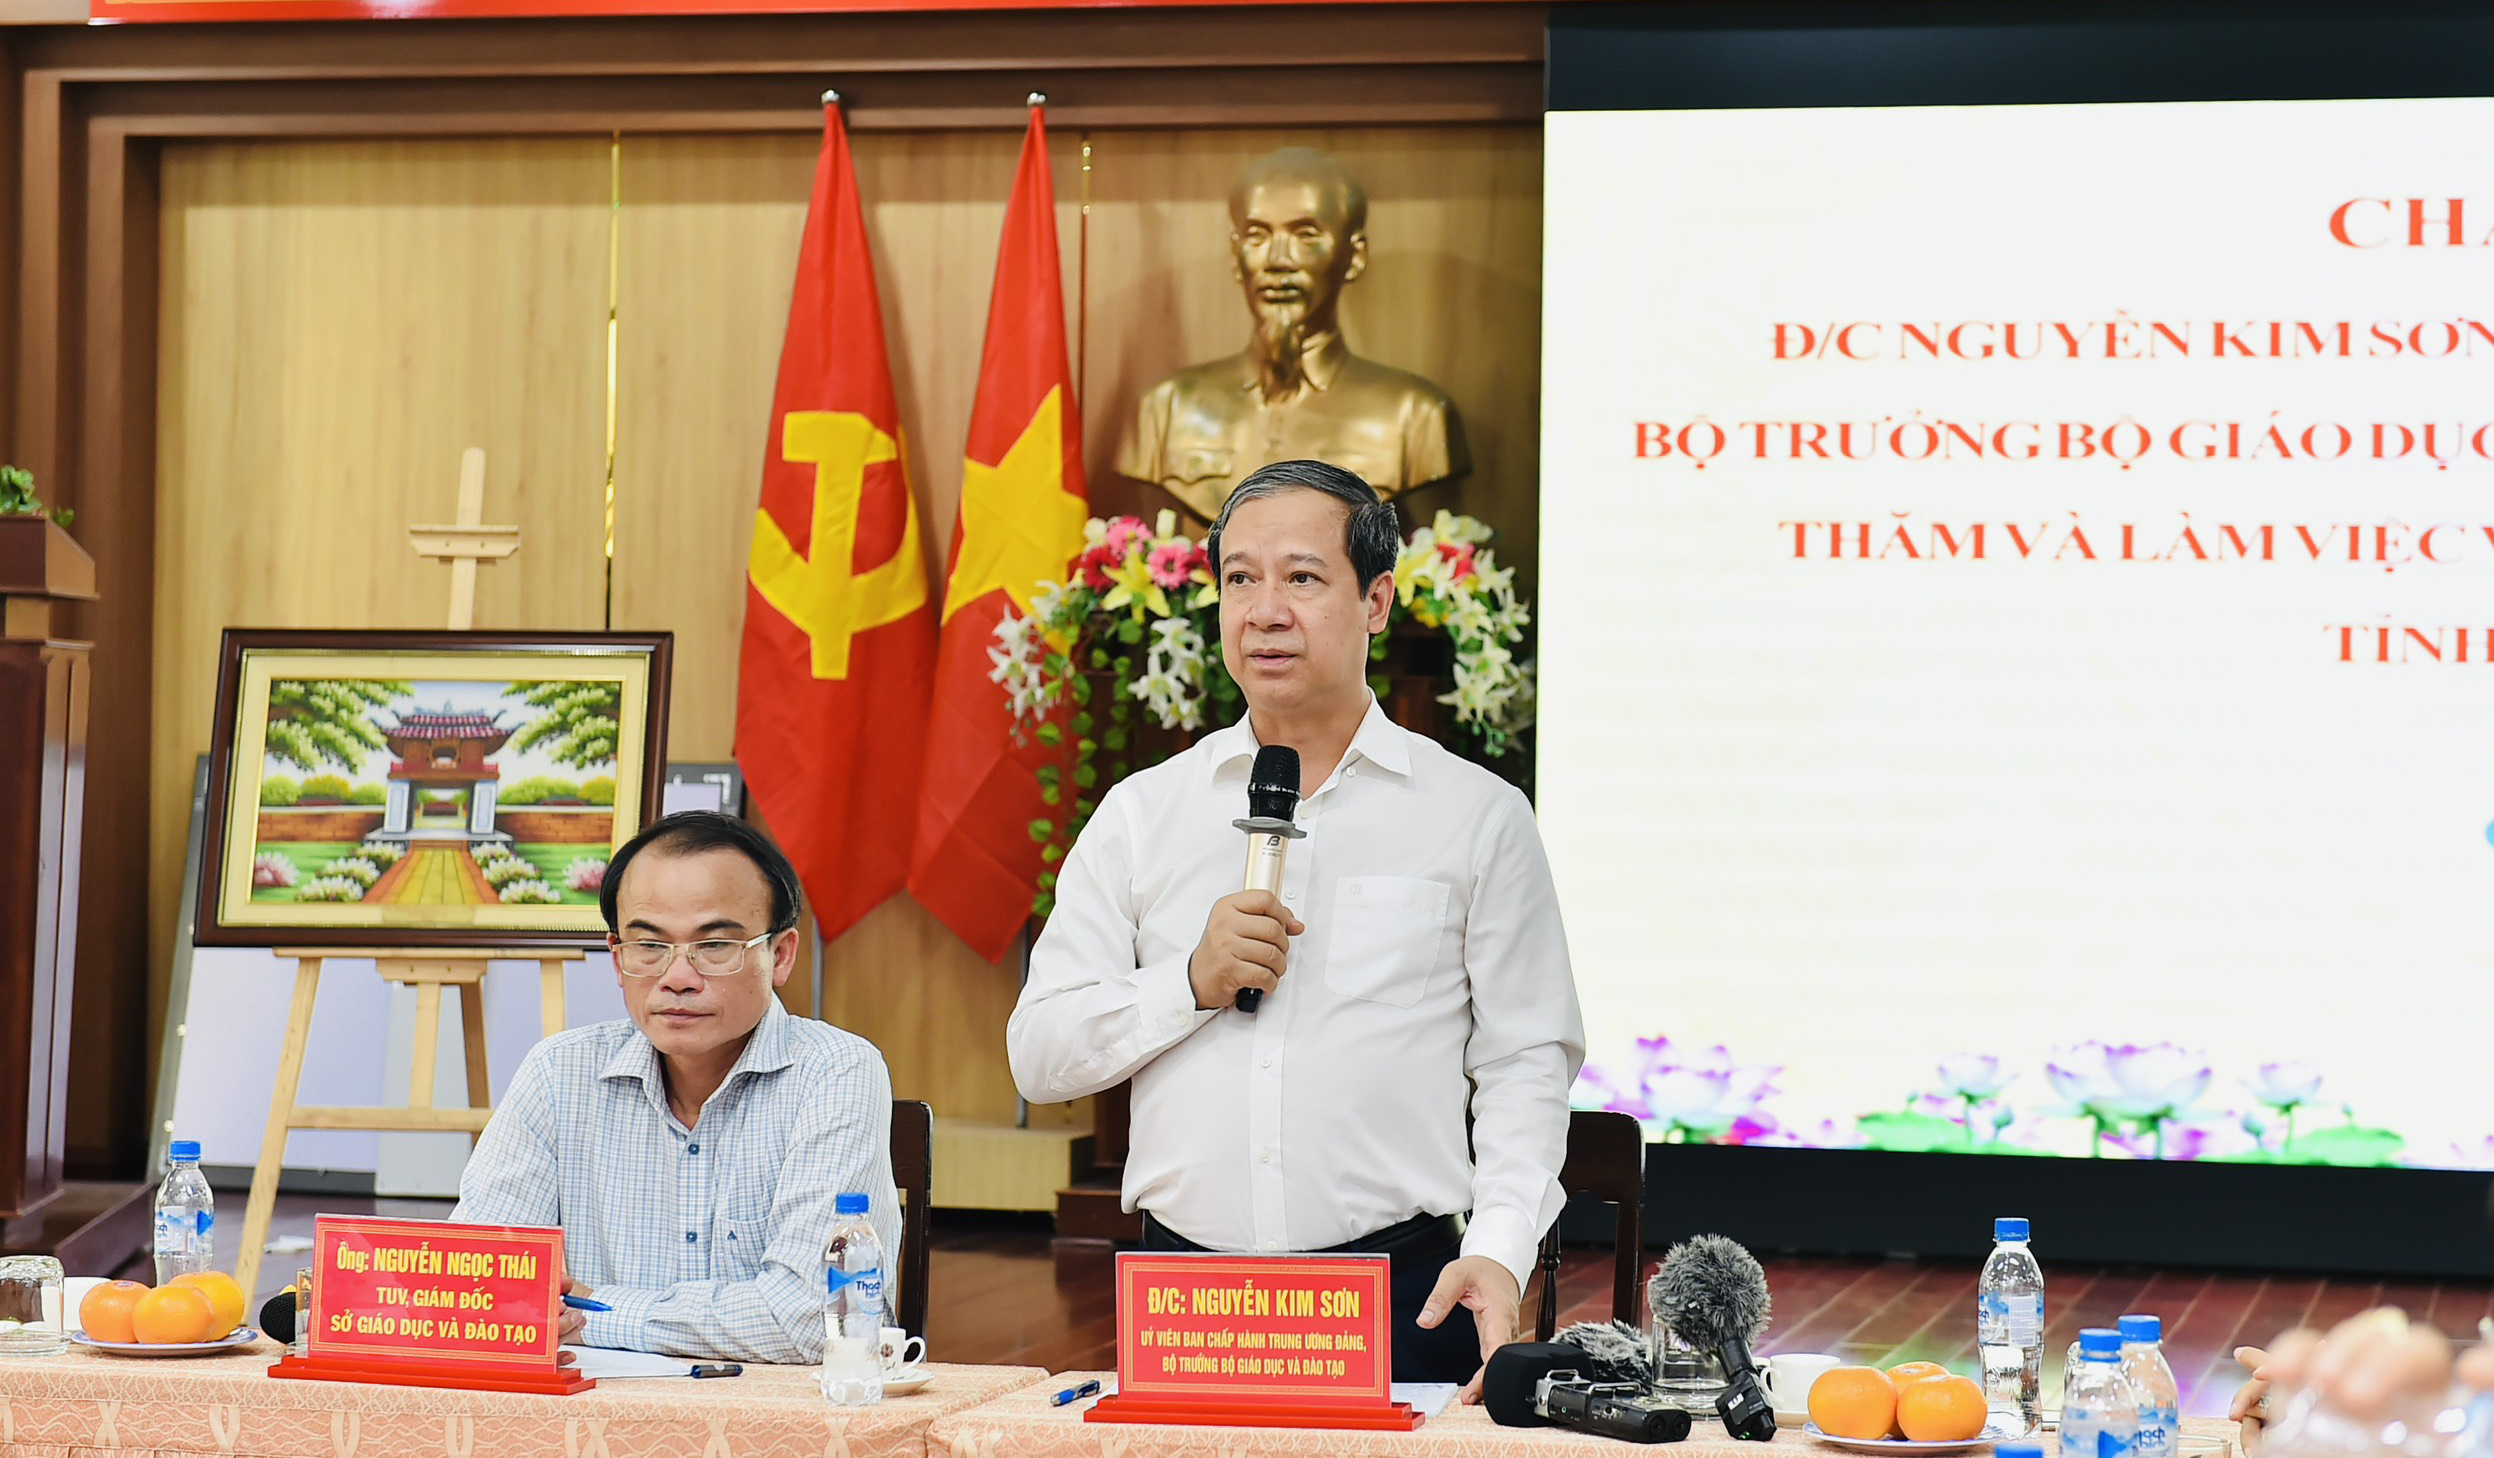 Bộ trưởng Bộ GD&ĐT Nguyễn Kim Sơn thăm và làm việc tại Sở GD&ĐT tỉnh Quảng Ngãi.